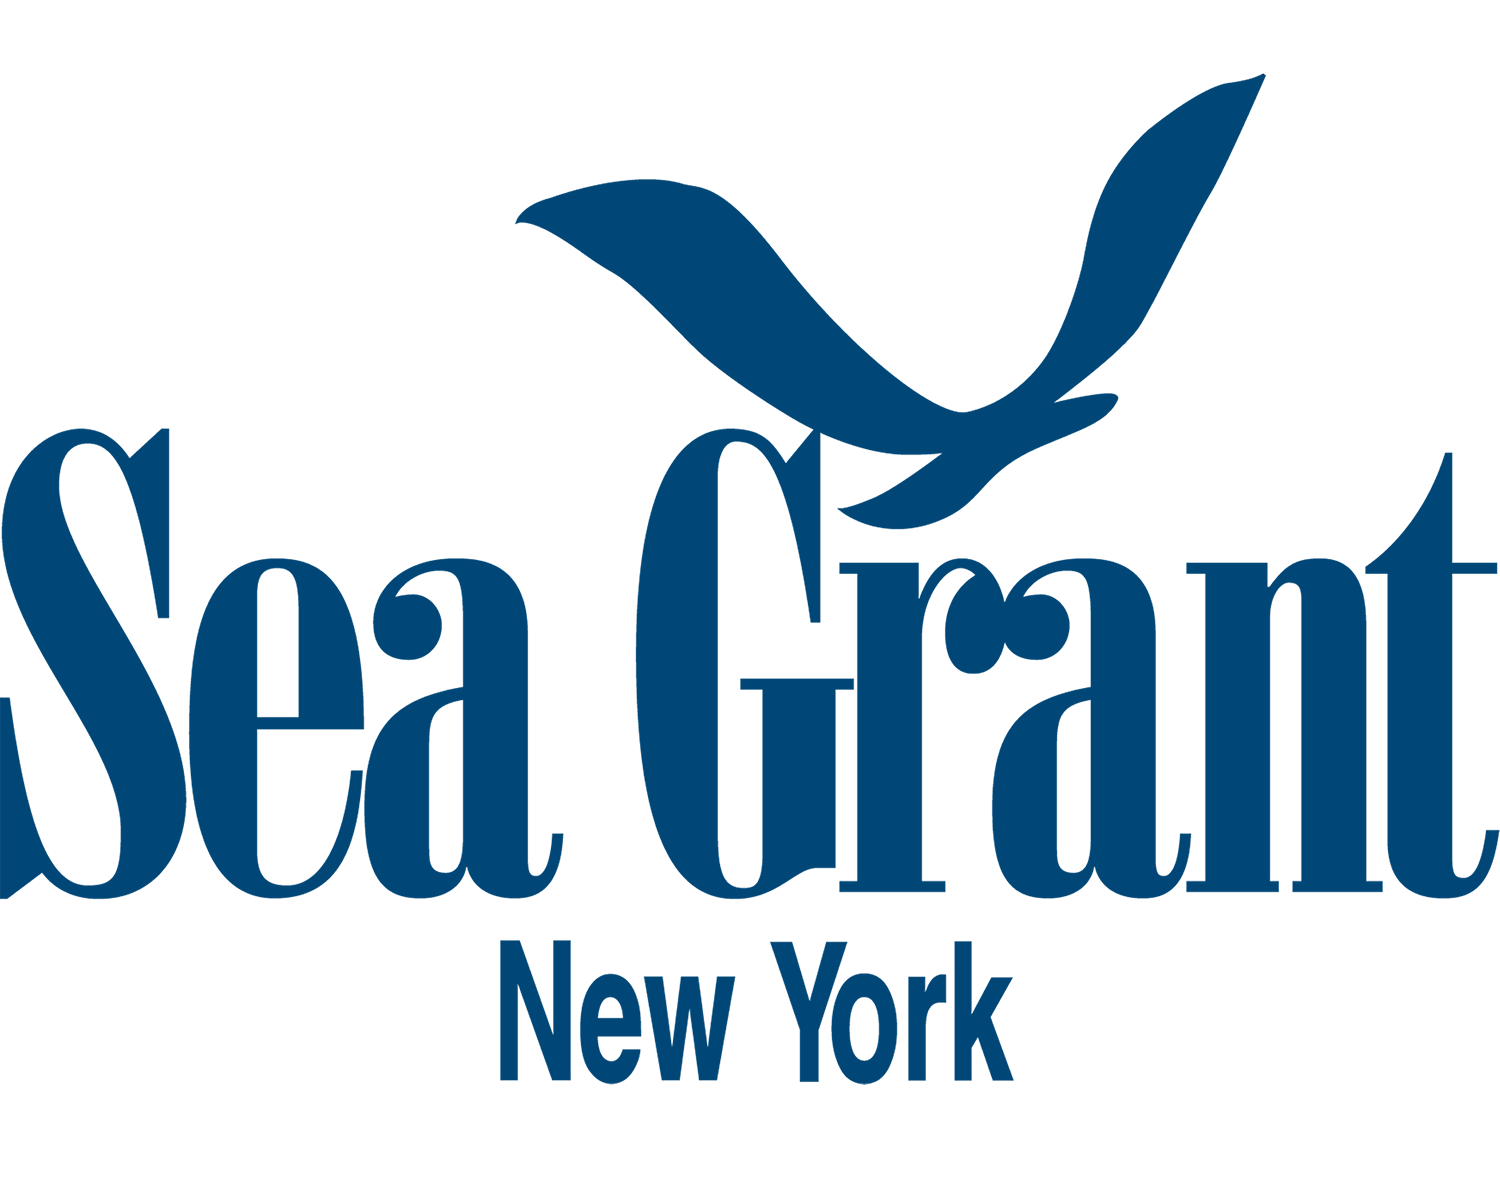 New York Sea Grant